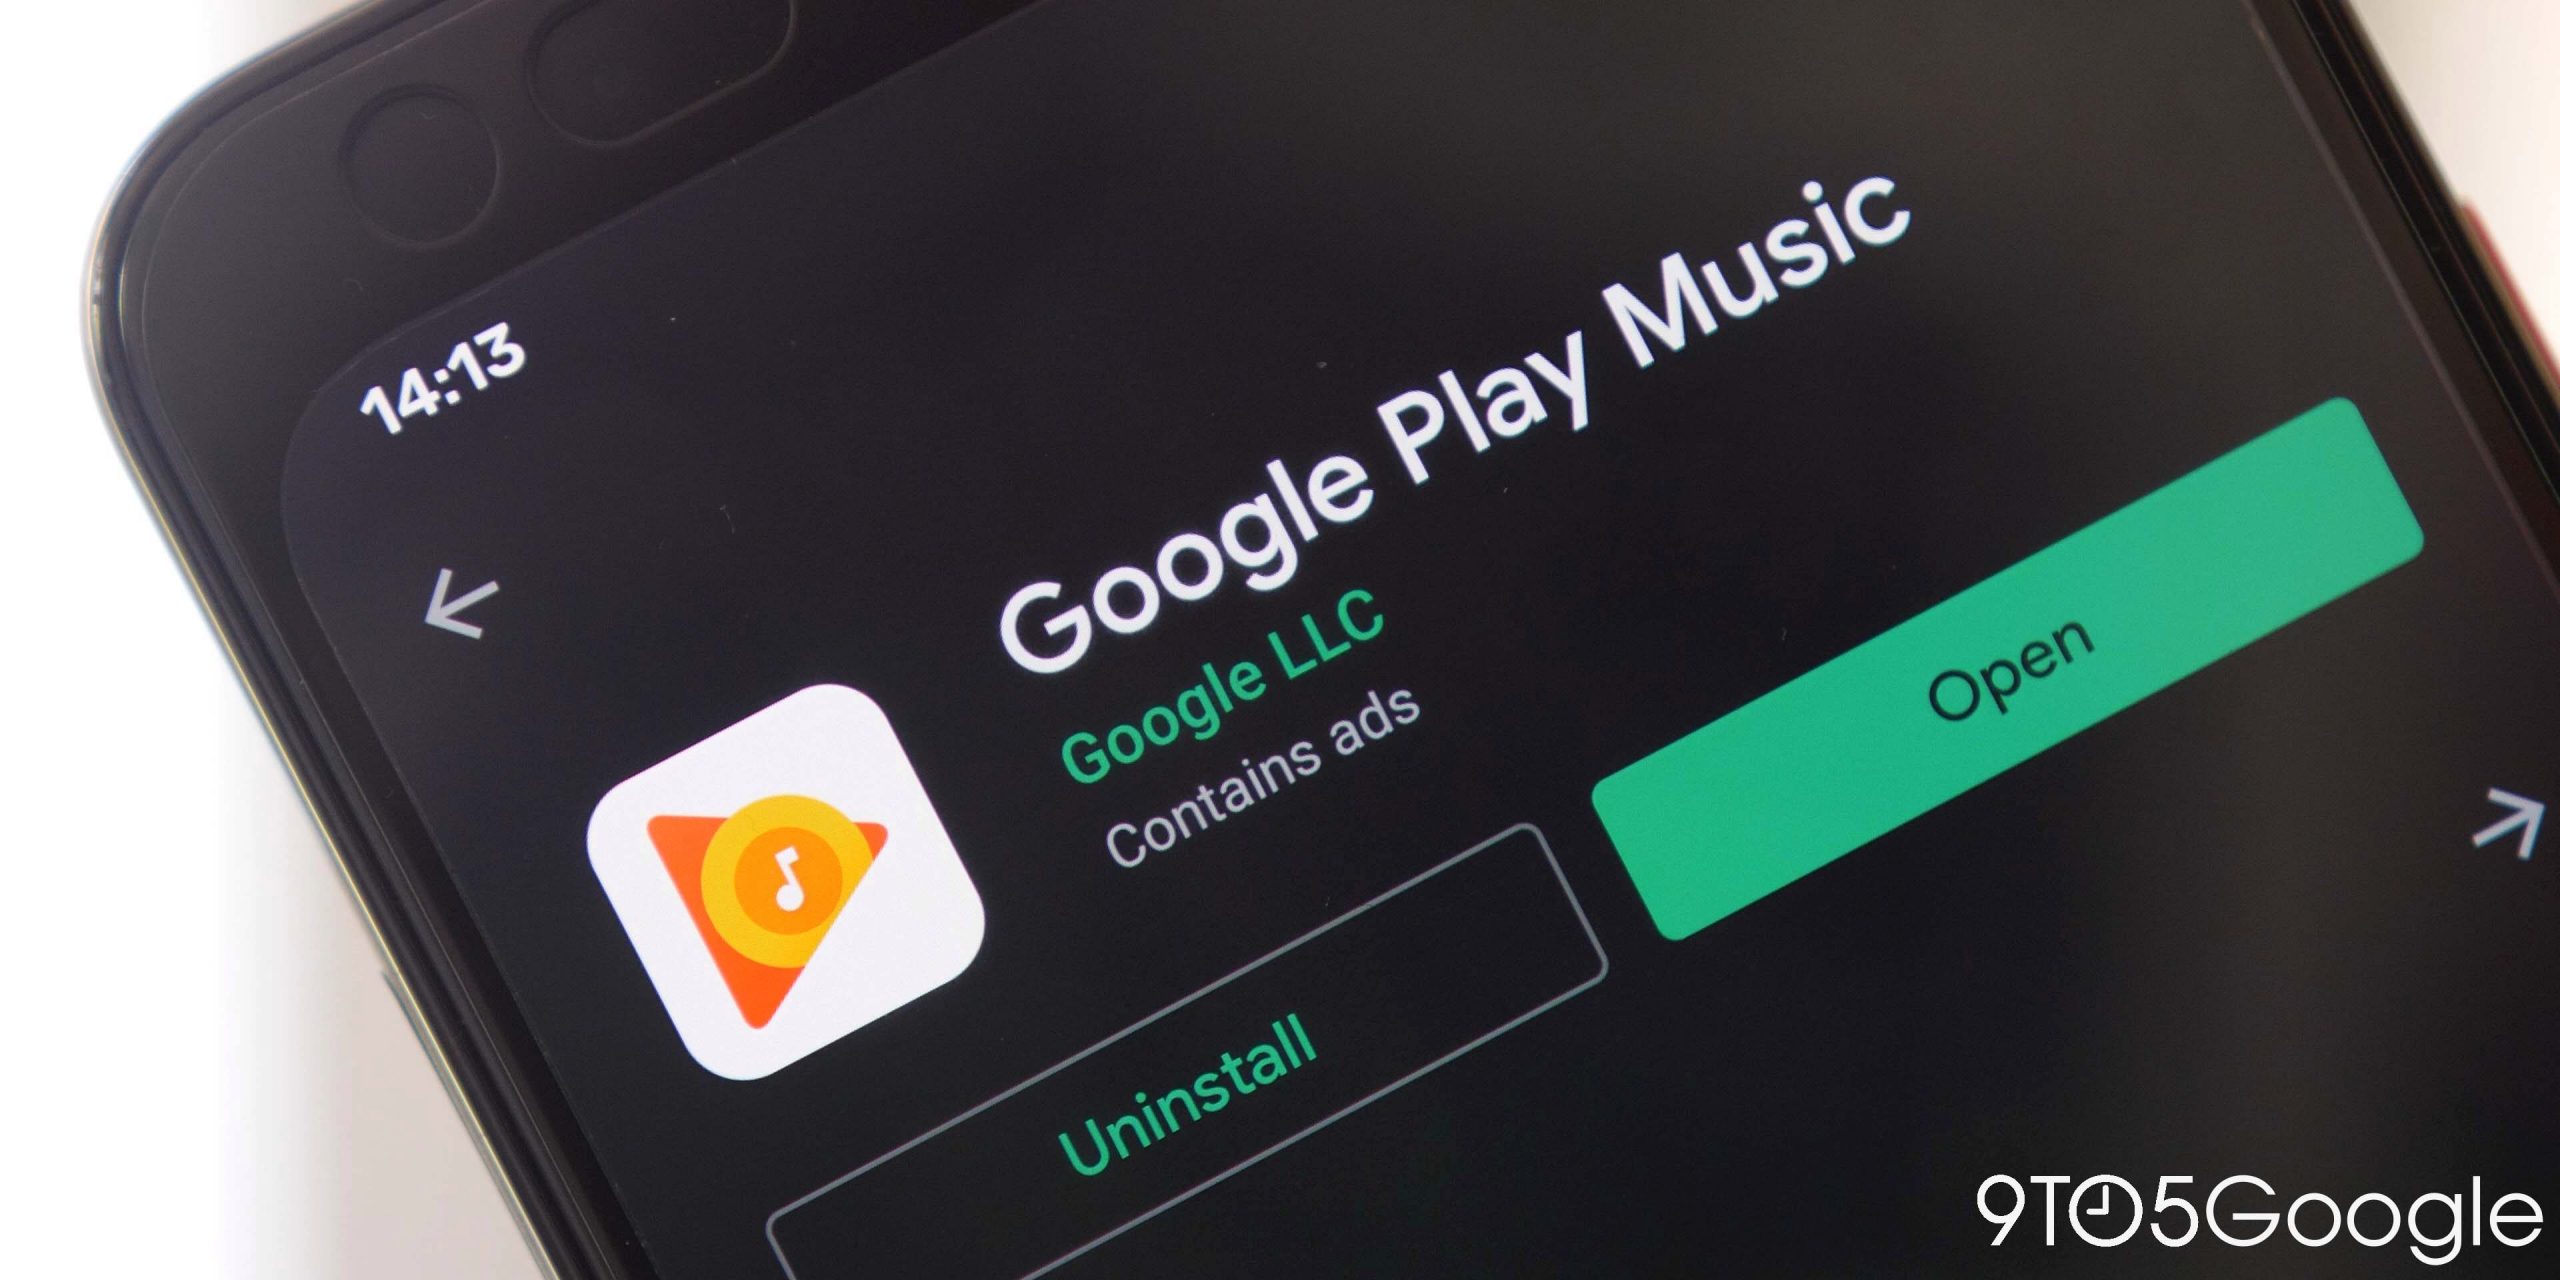 Google Play Music: 7 alternativas para tentar se YouTube A música não flutua no seu barco [Video]